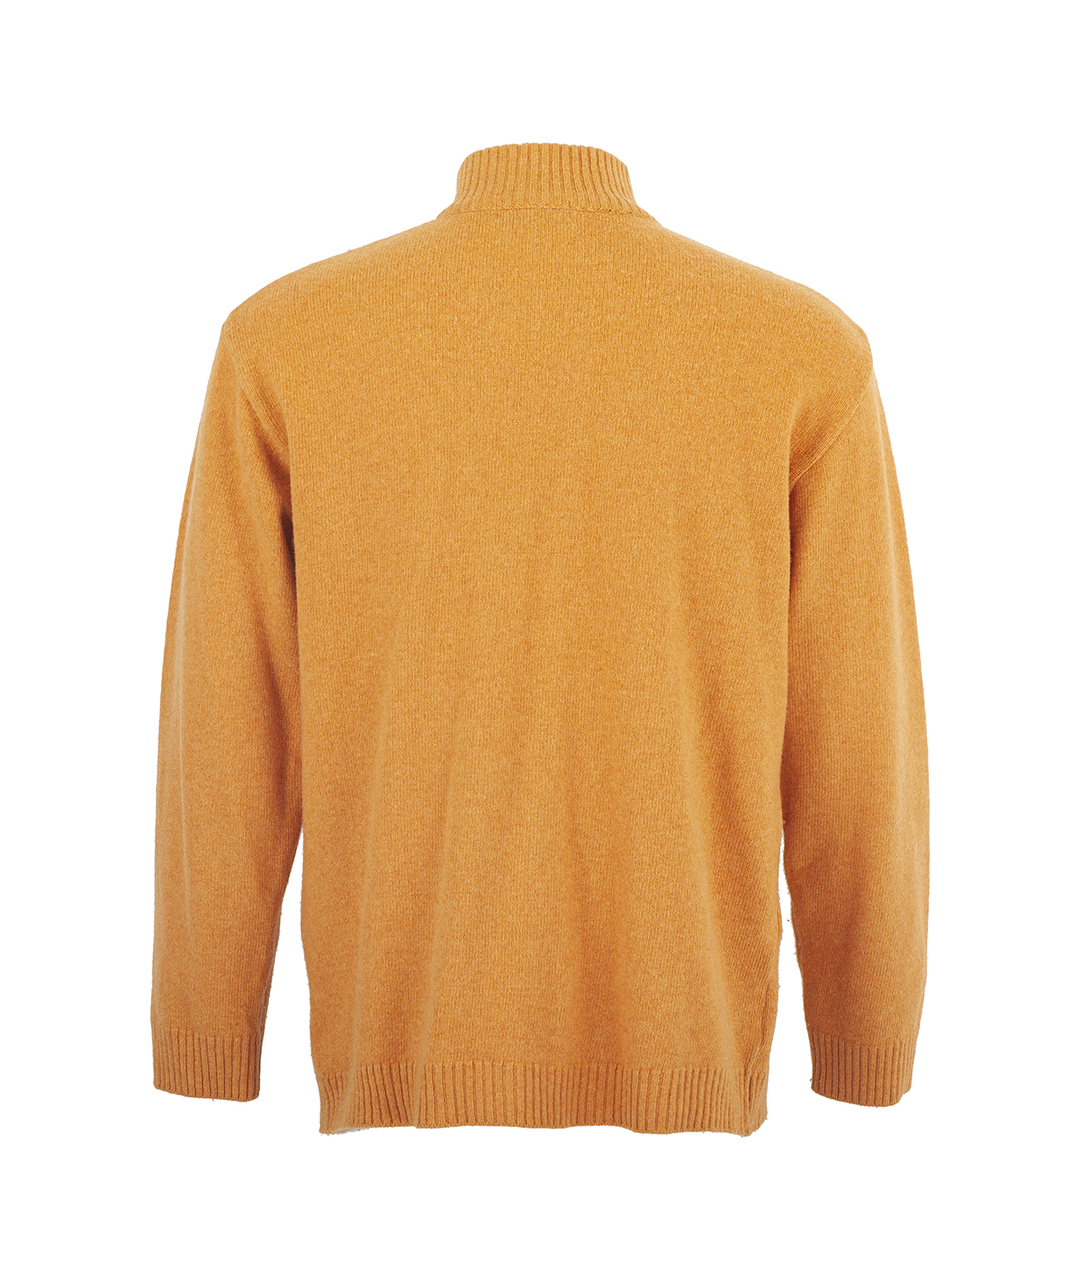 CAROLINA HERRERA Оранжевый шерстяной джемпер / свитер, фото 2